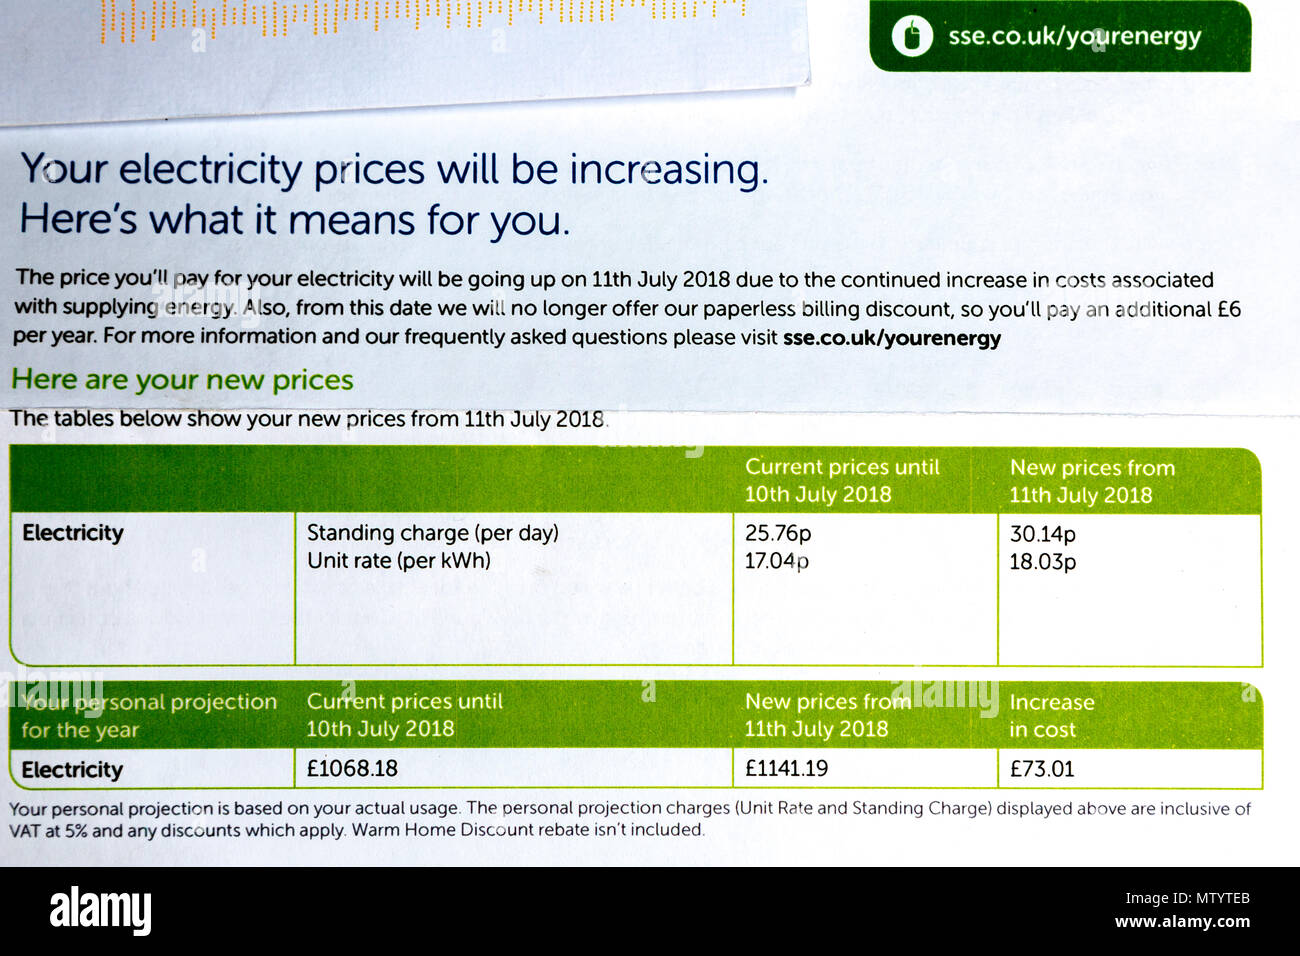 Eine Anmeldung von Strom Preiserhöhung ab dem 11. Juli 2018 kamen heute für eine SSE Kunden. Die Benachrichtigung nicht nur eine Erhöhung der Strompreise, sondern auch zusätzliche Kosten in Höhe von 6 £ pro Jahr, da sie nicht mehr mit einem papierlosen Abrechnung Rabatt. Mit einem Plus von 4,38 p für den Grundpreis pro Tag und eine Zunahme von 0,99 p auf der Einheit Preis (je Kwh). Für diese Kunden eine erhöhte Projektion Preis von £ 73,01 für das nächste Jahr. © Ian Jones/Alamy Leben Nachrichten. Stockfoto